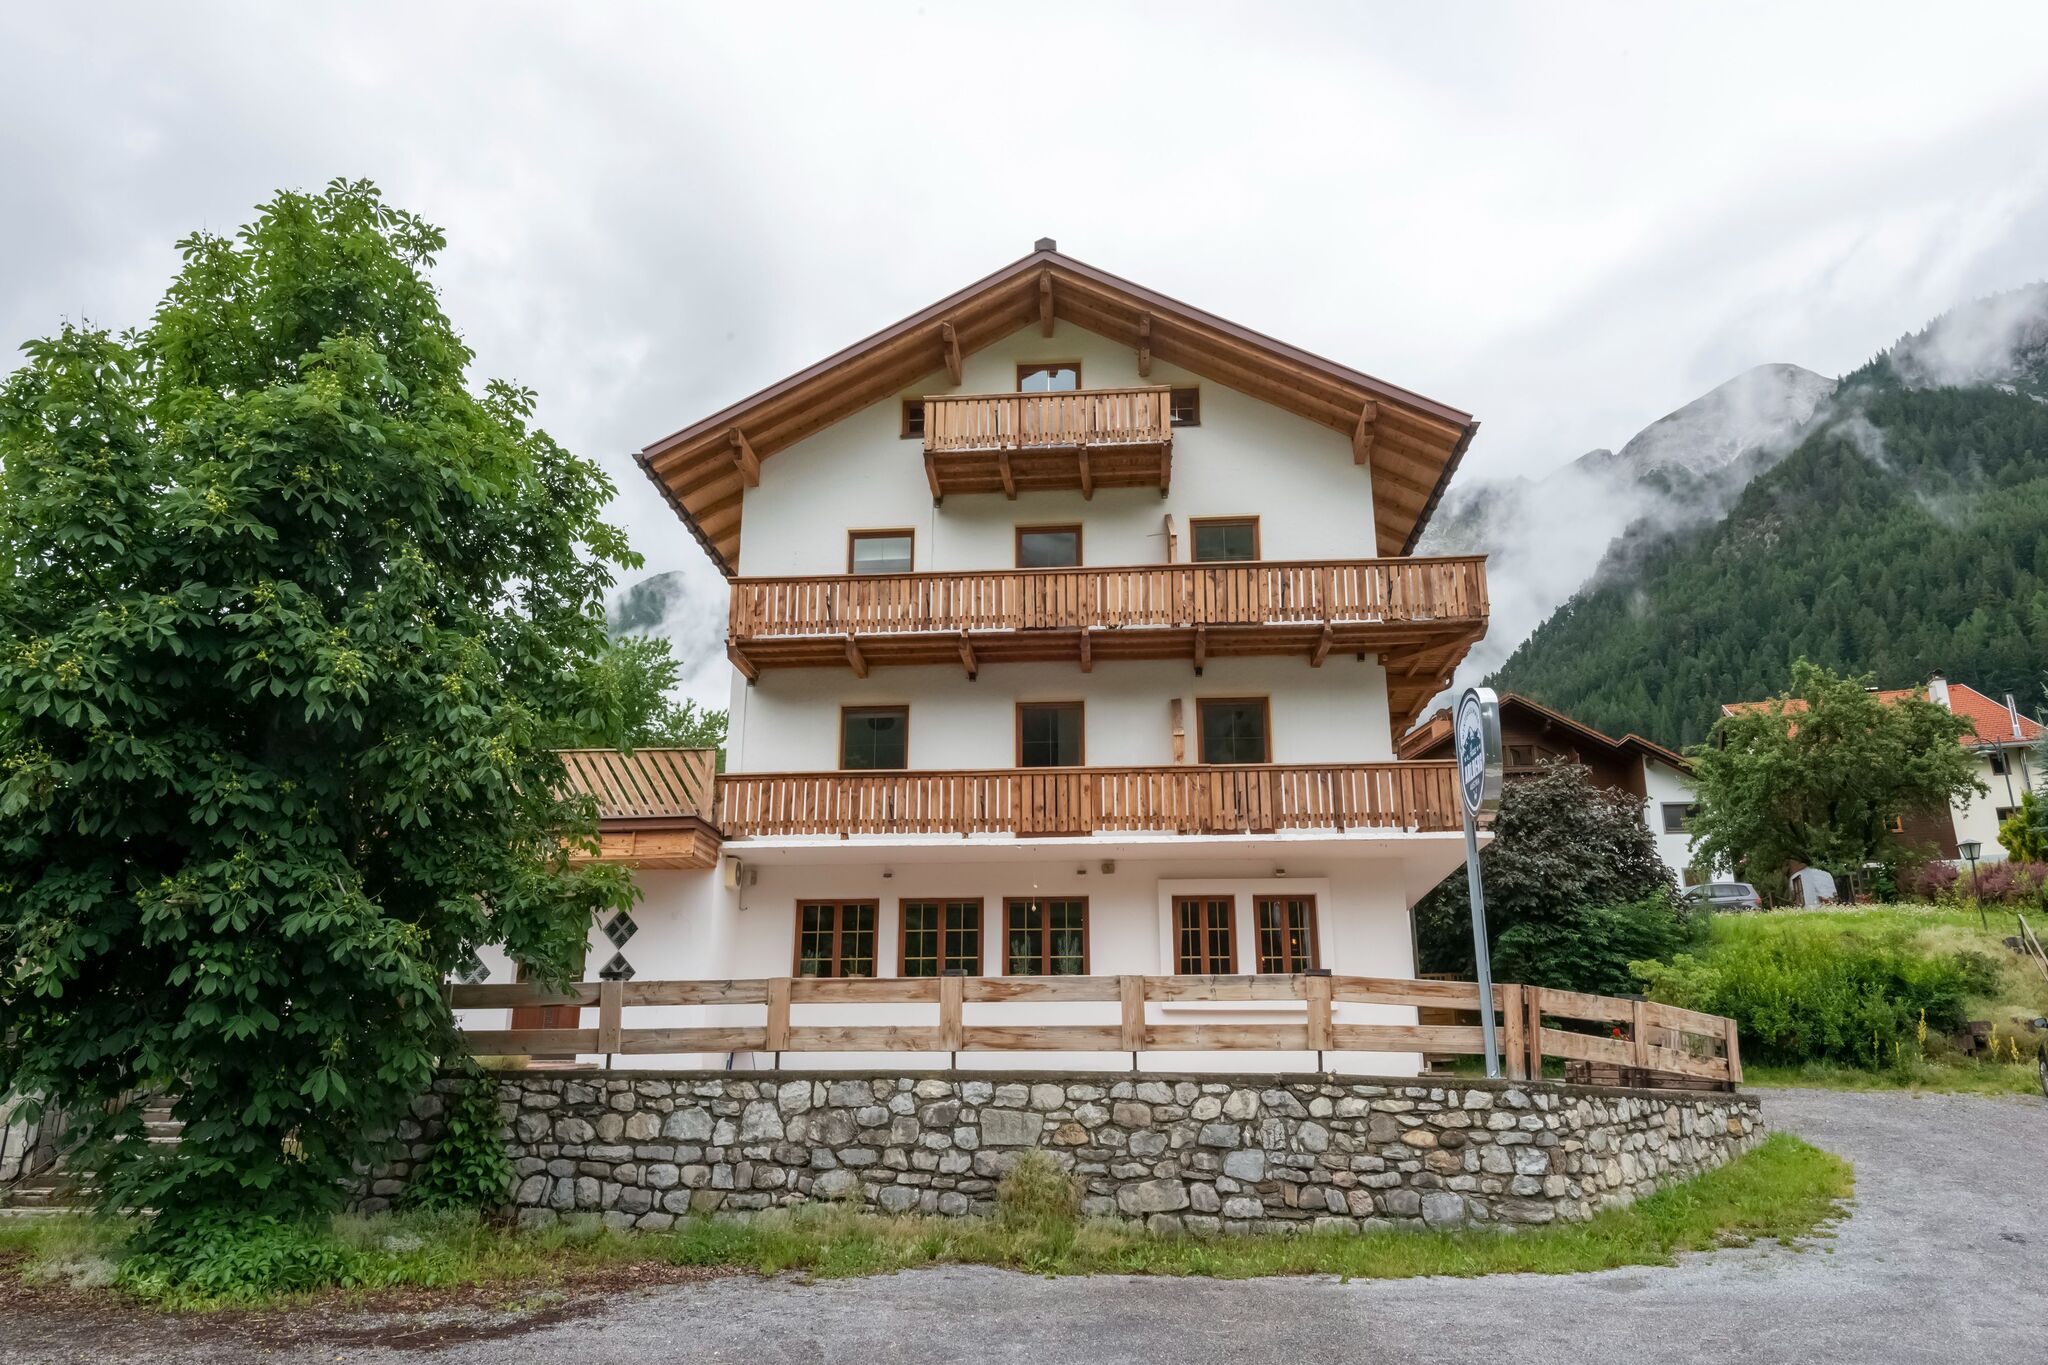 Ferienhaus nahe St. Anton am Arlberg mit Sauna